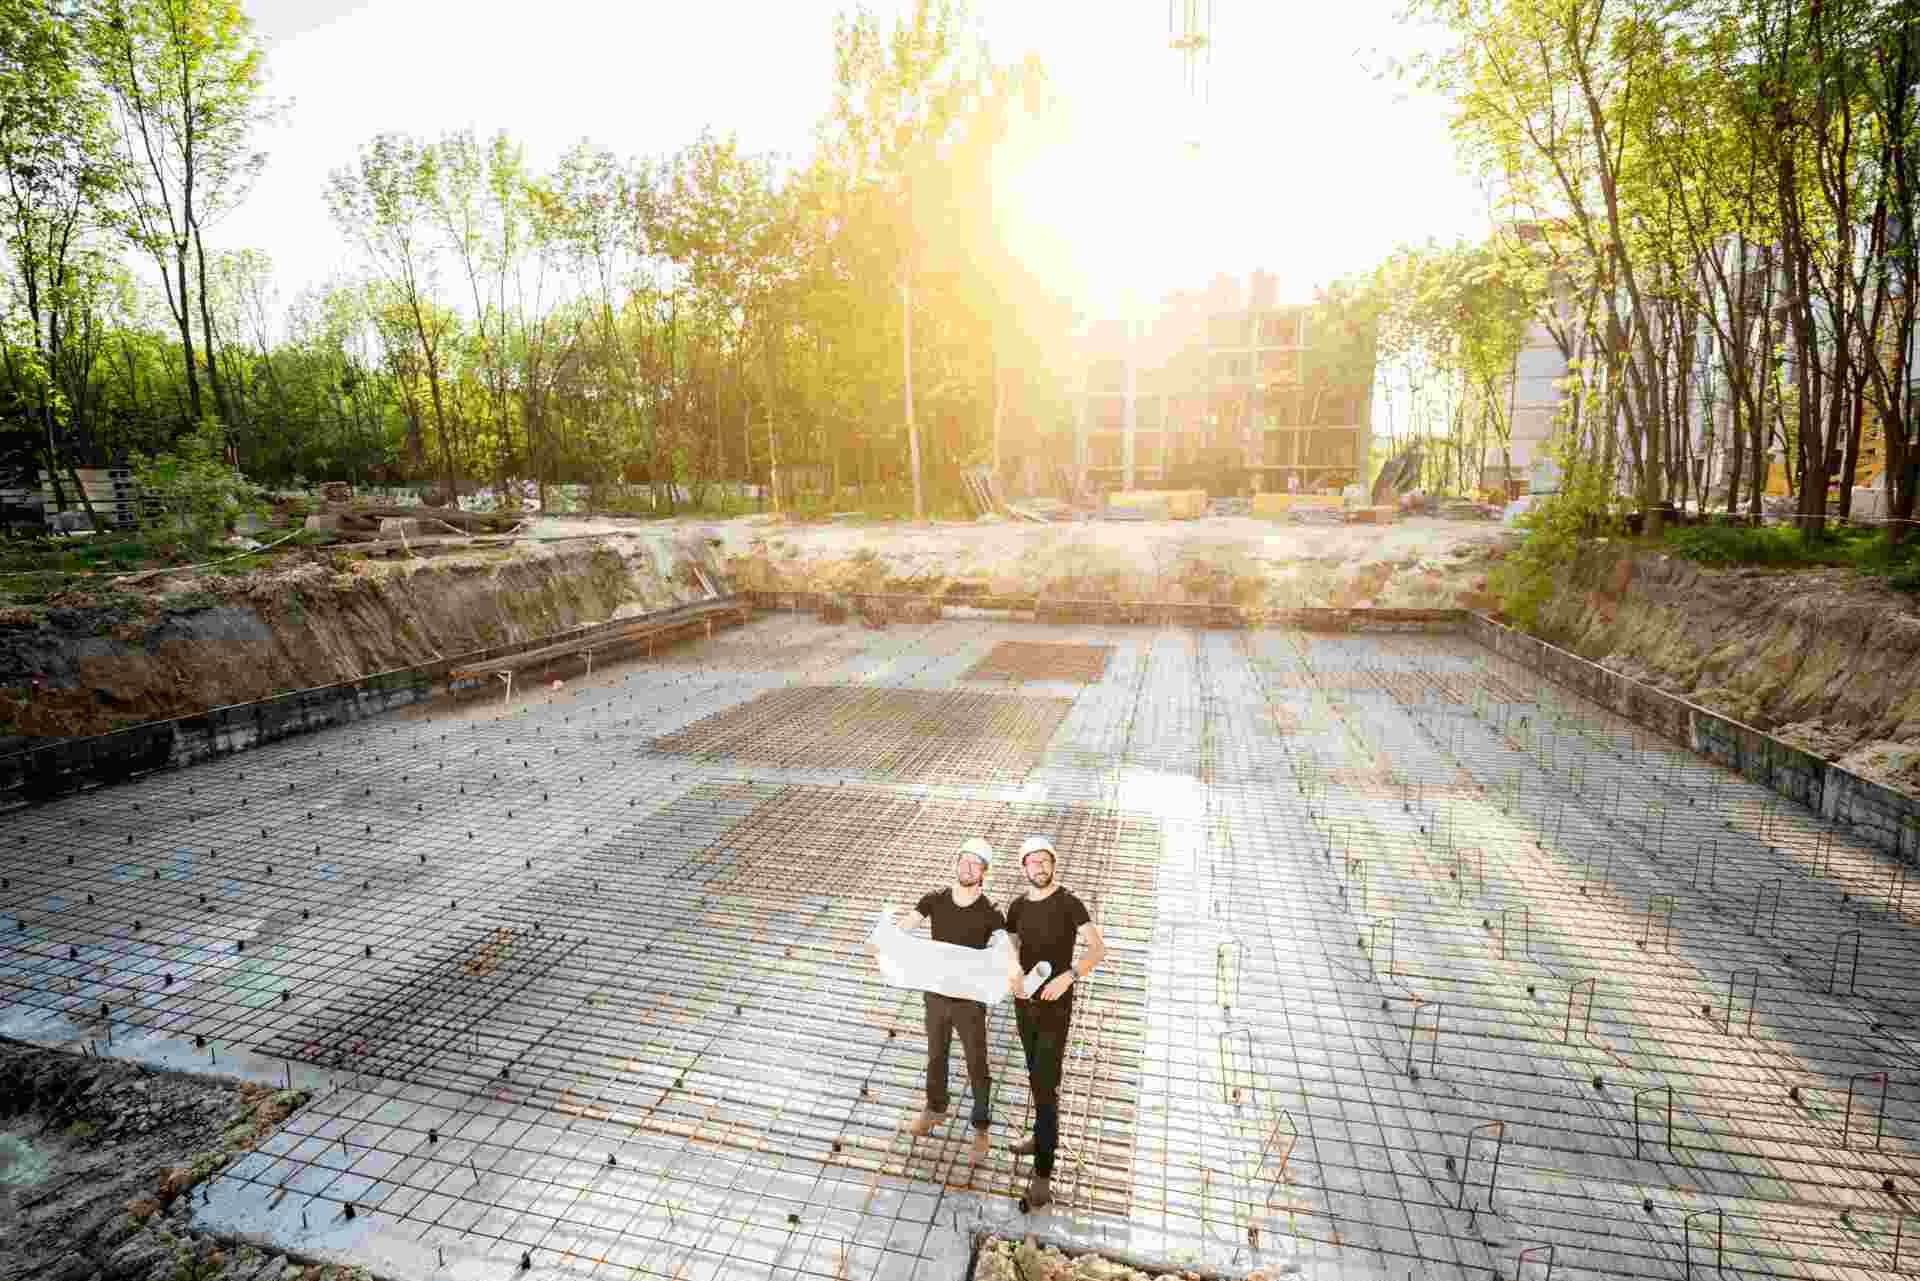 Deux experts contrôlent les fondations d'un chantier, plan à la main